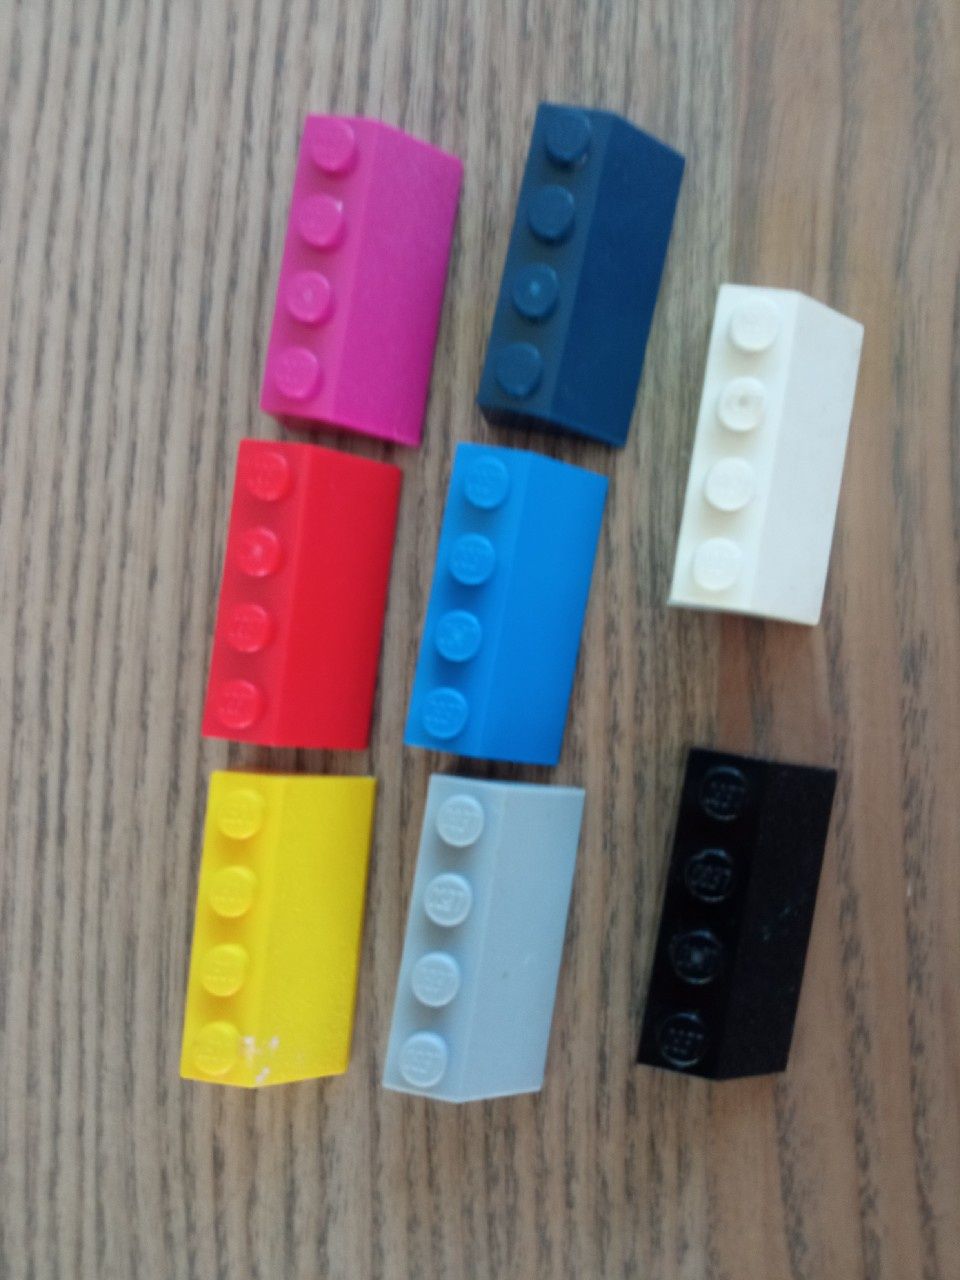 LEGO 3037 daszek, skos 2x4 (29szt)